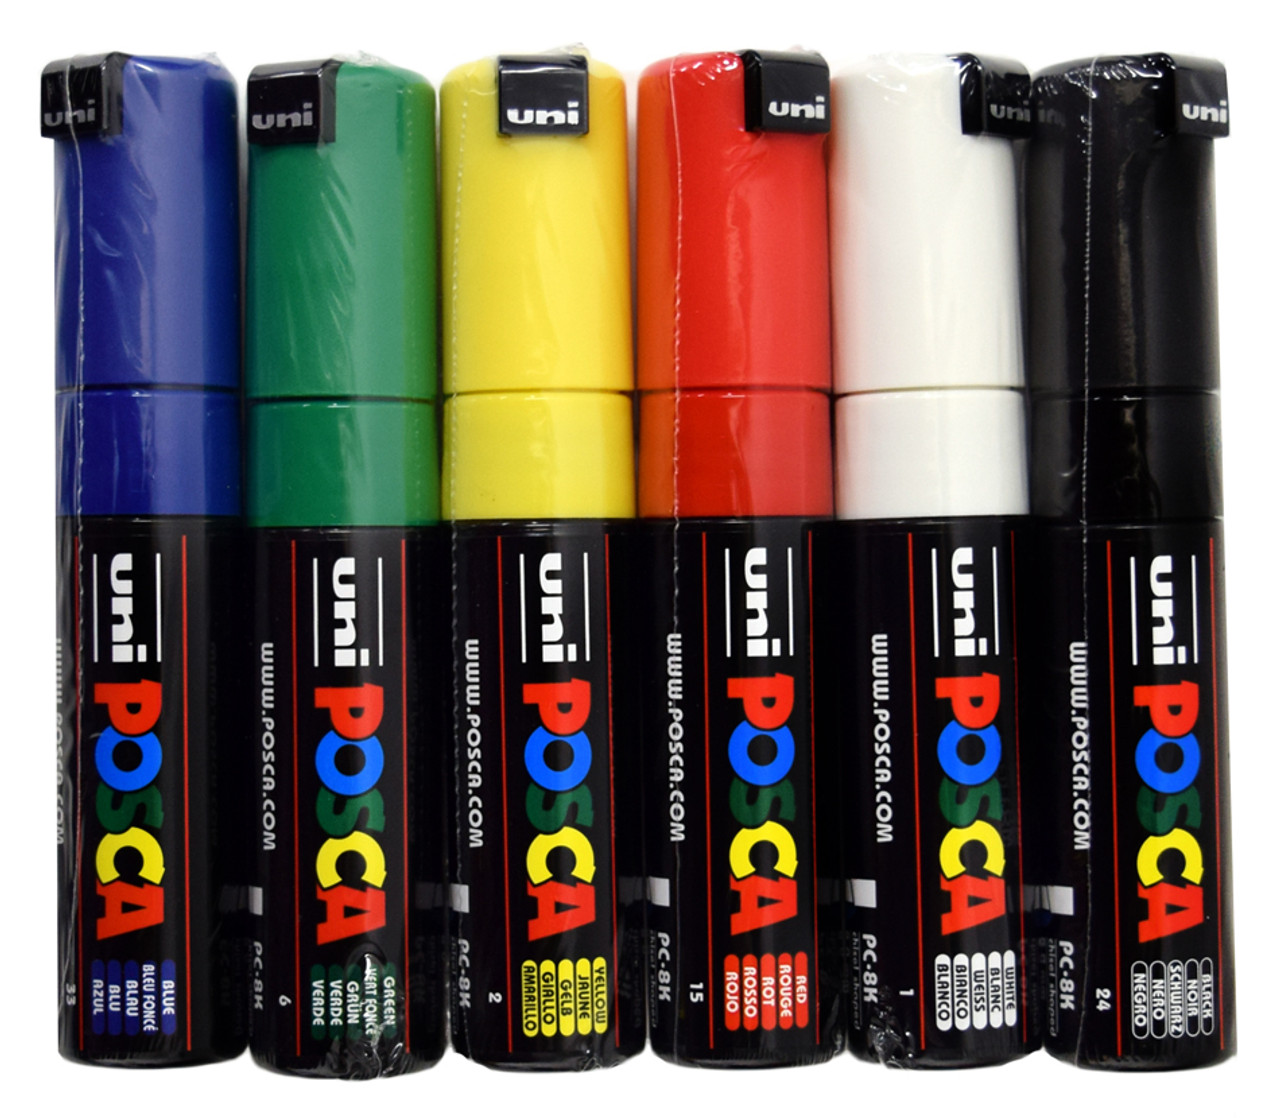 POSCA Acrylic Paint Markers PC-8K – Olyphant Art Supply